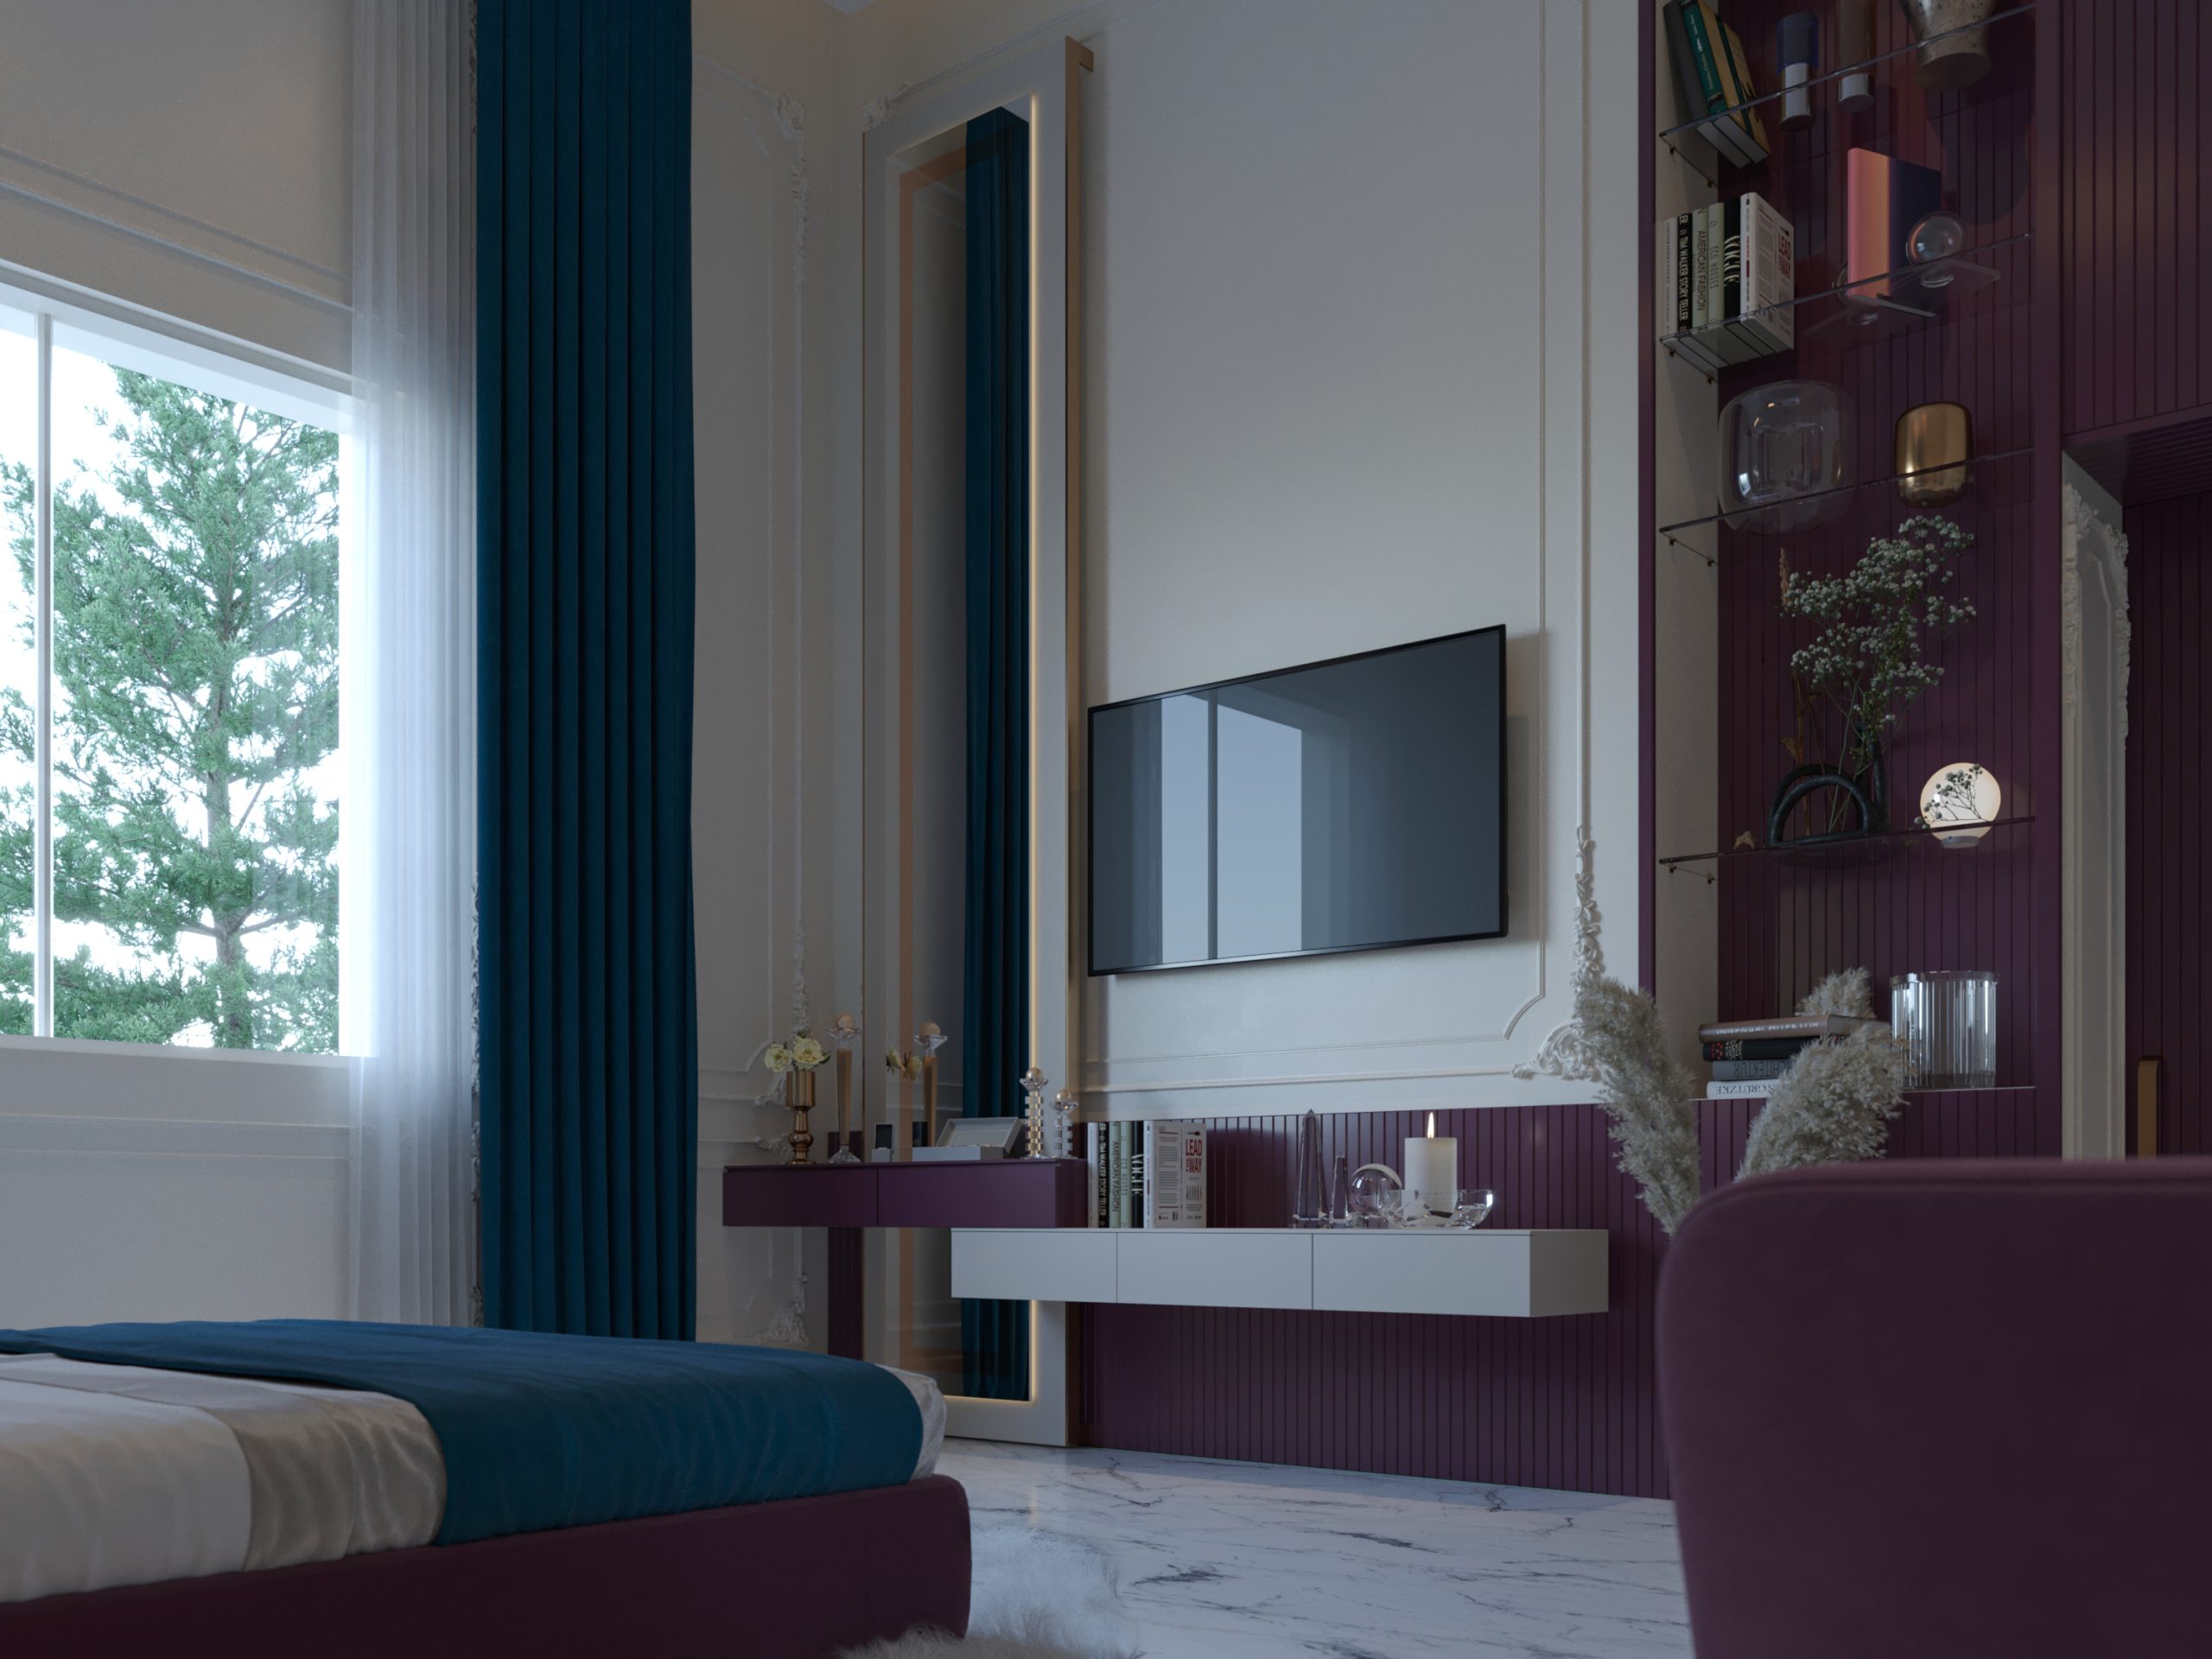 LUXURY BEDROOMS COLLECTION - tv set -interior - bedroom - purple